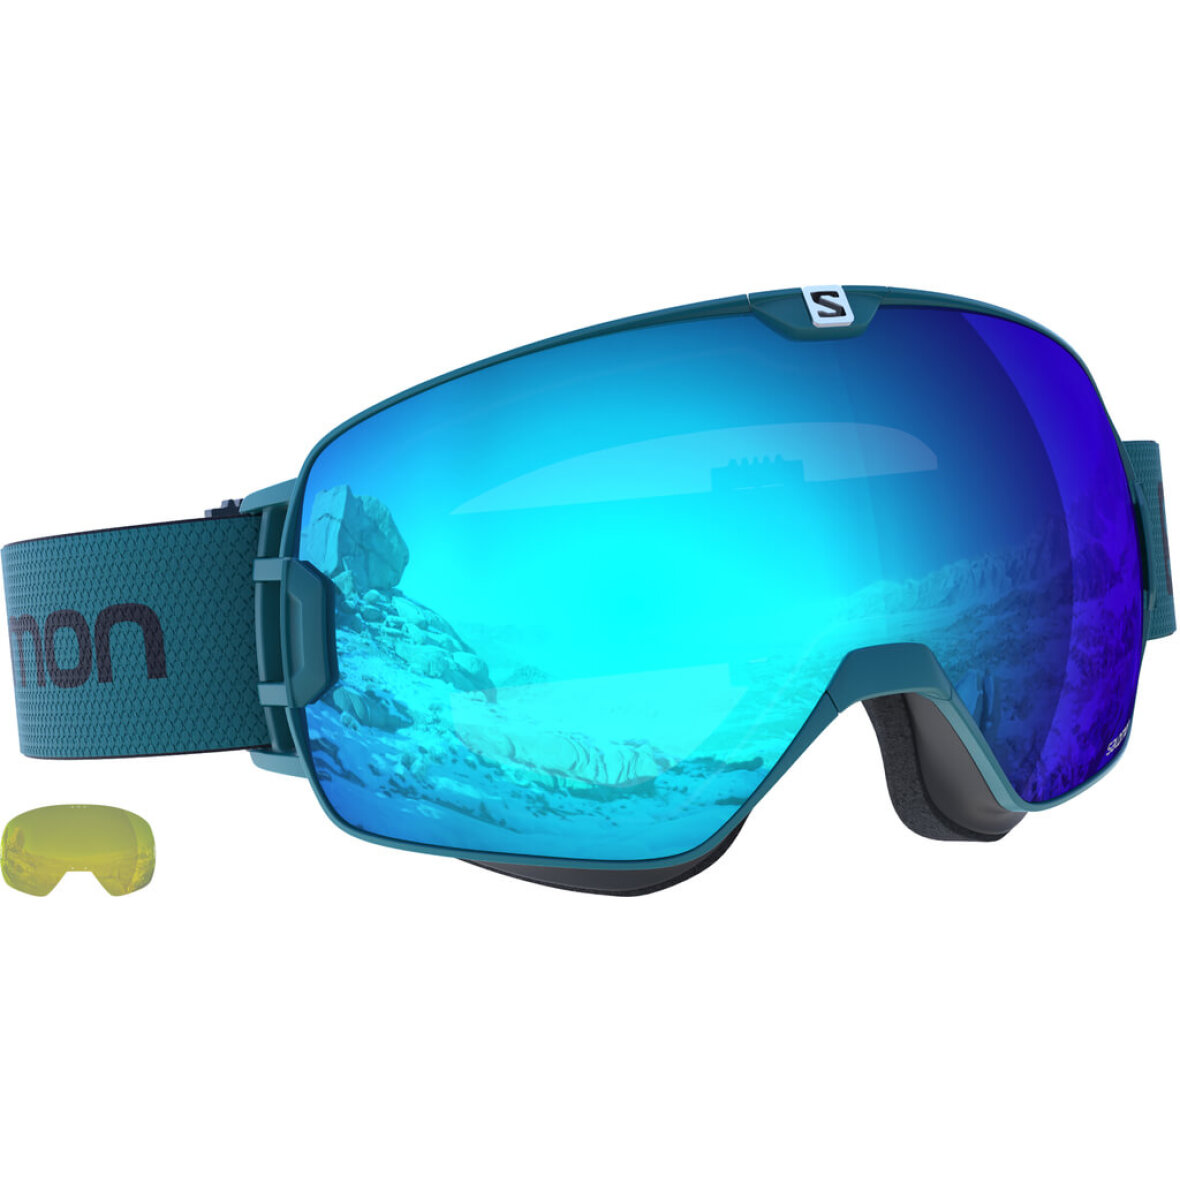 Placeret I første omgang skillevæg Skibriller XMAX Hawaiian Surf med blå glas fra Salomon